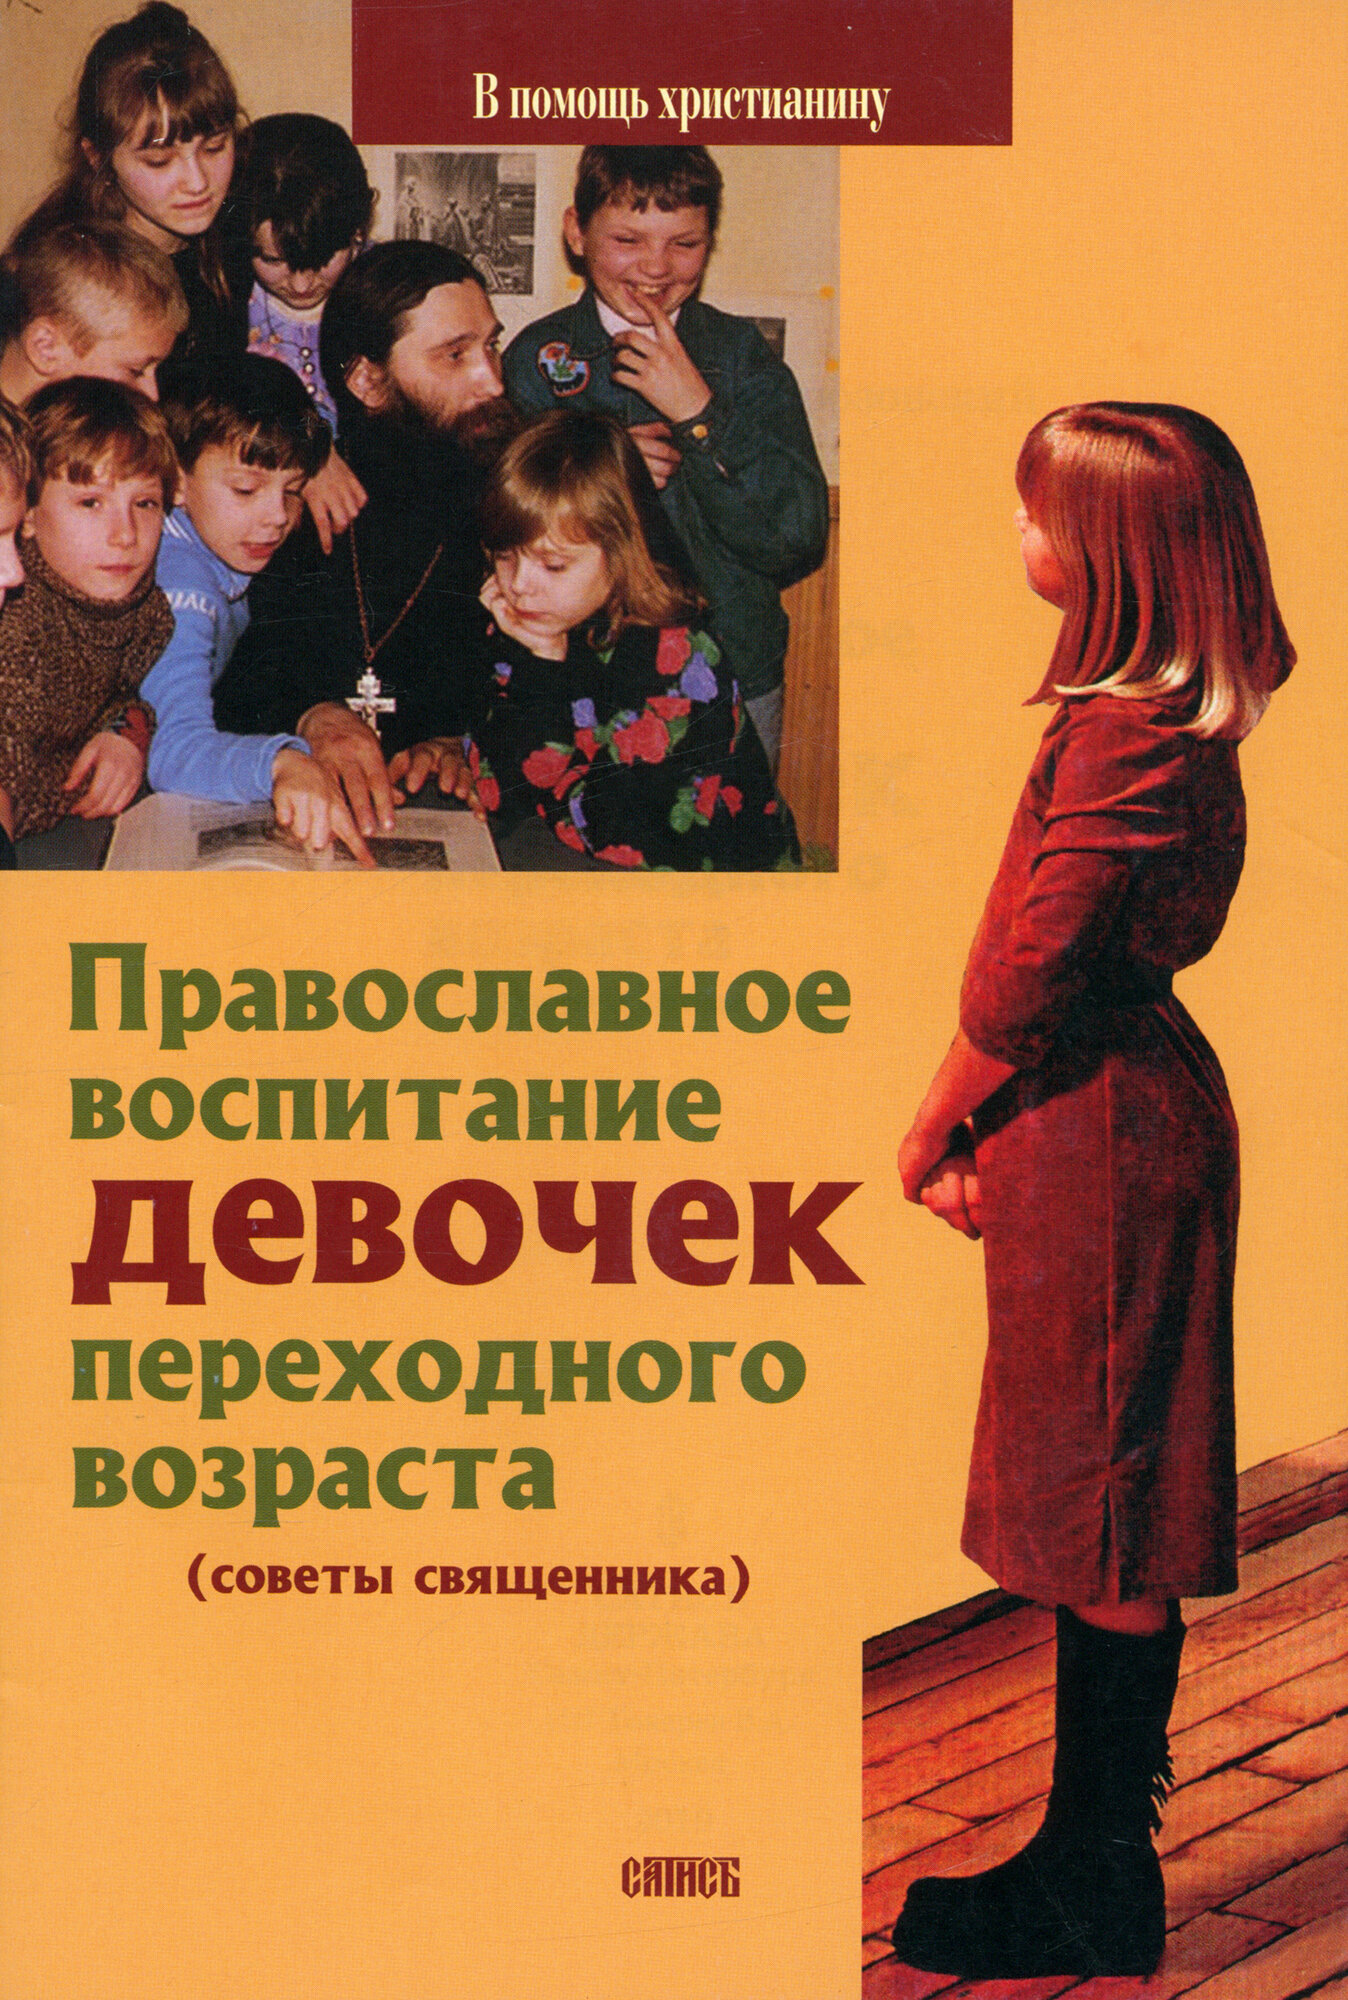 Православное воспитание девочек переходного возраста. Советы священника